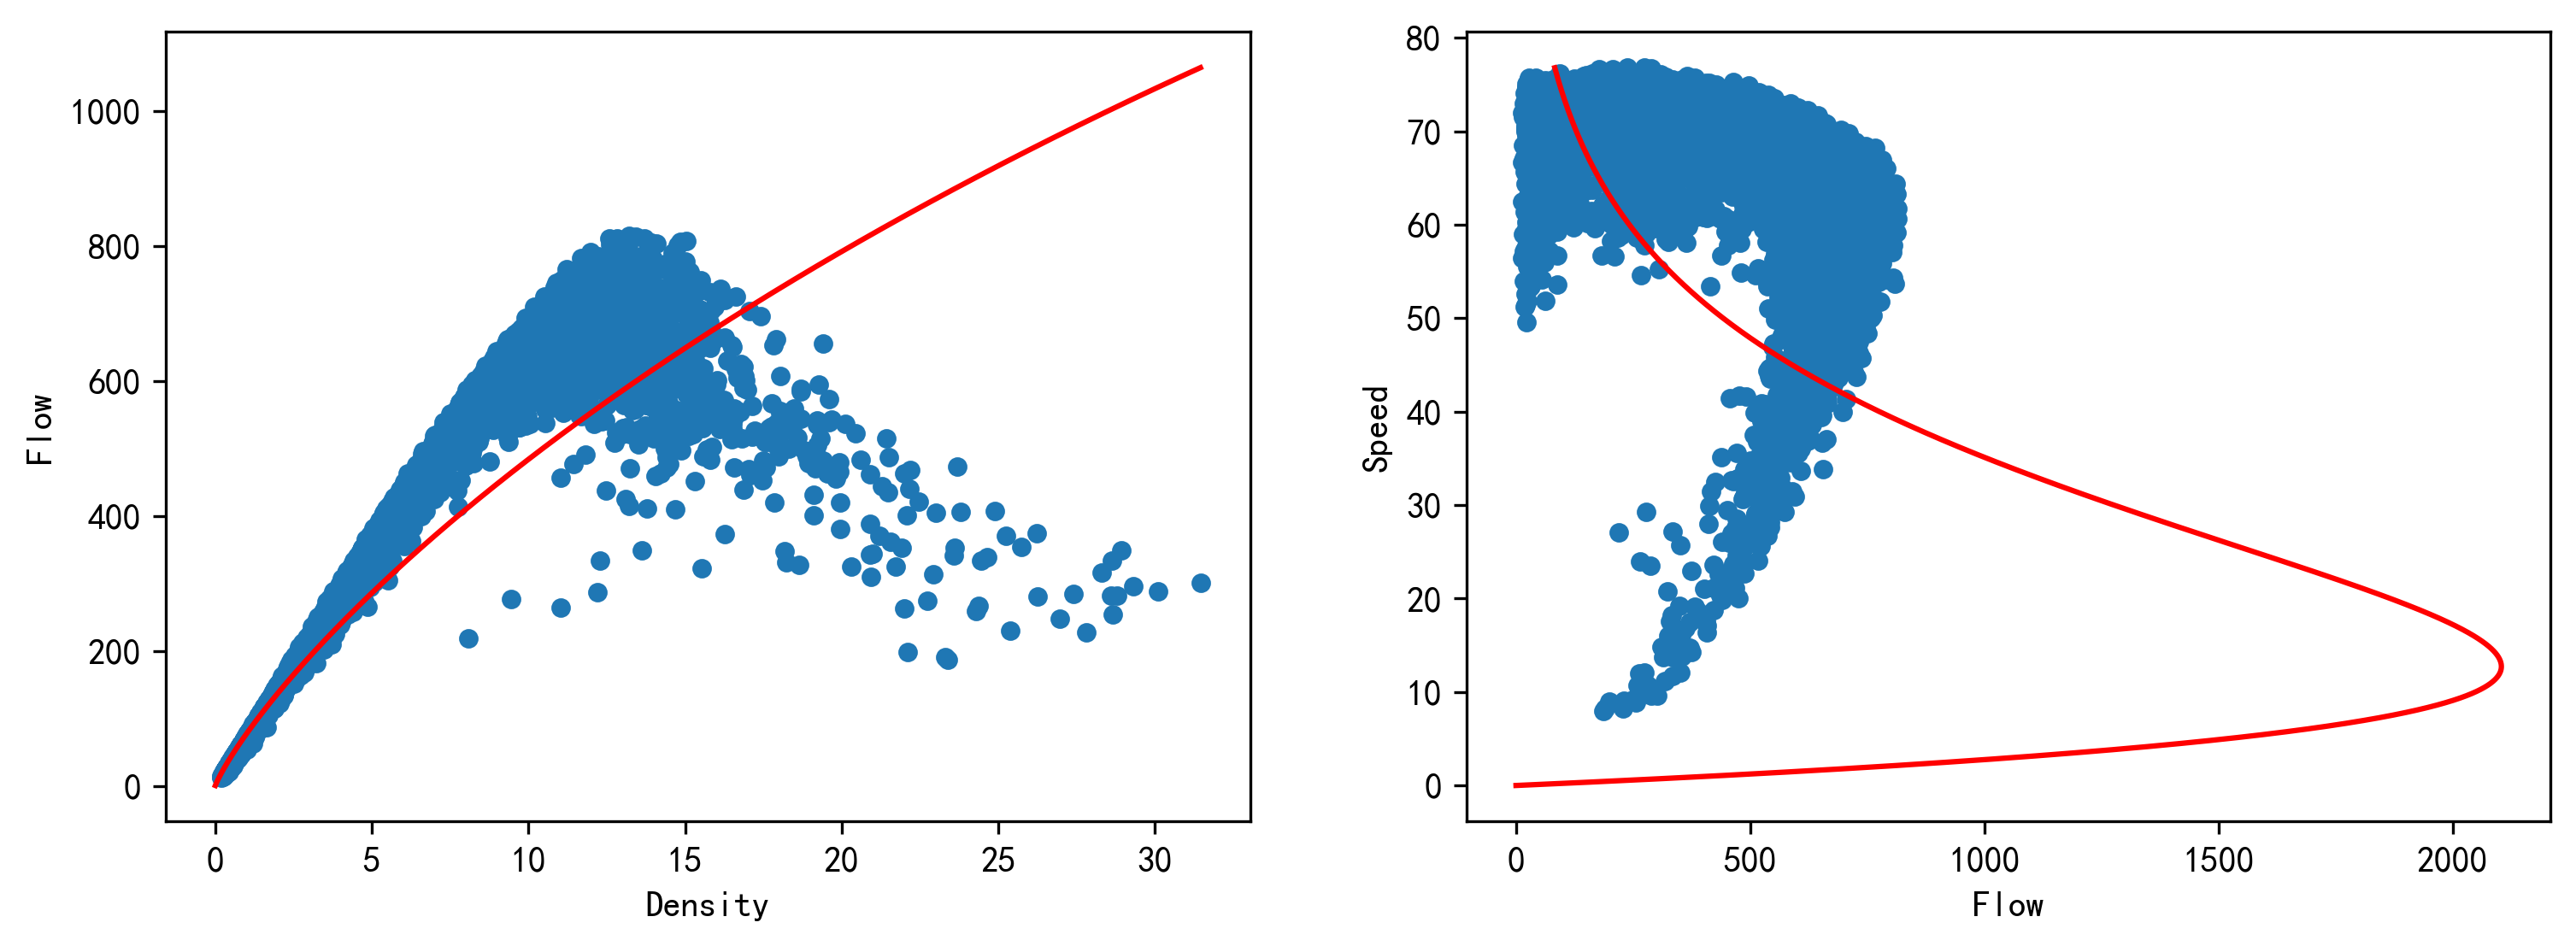 格林伯格模型在流量-密度和速度-流量关系上的表现